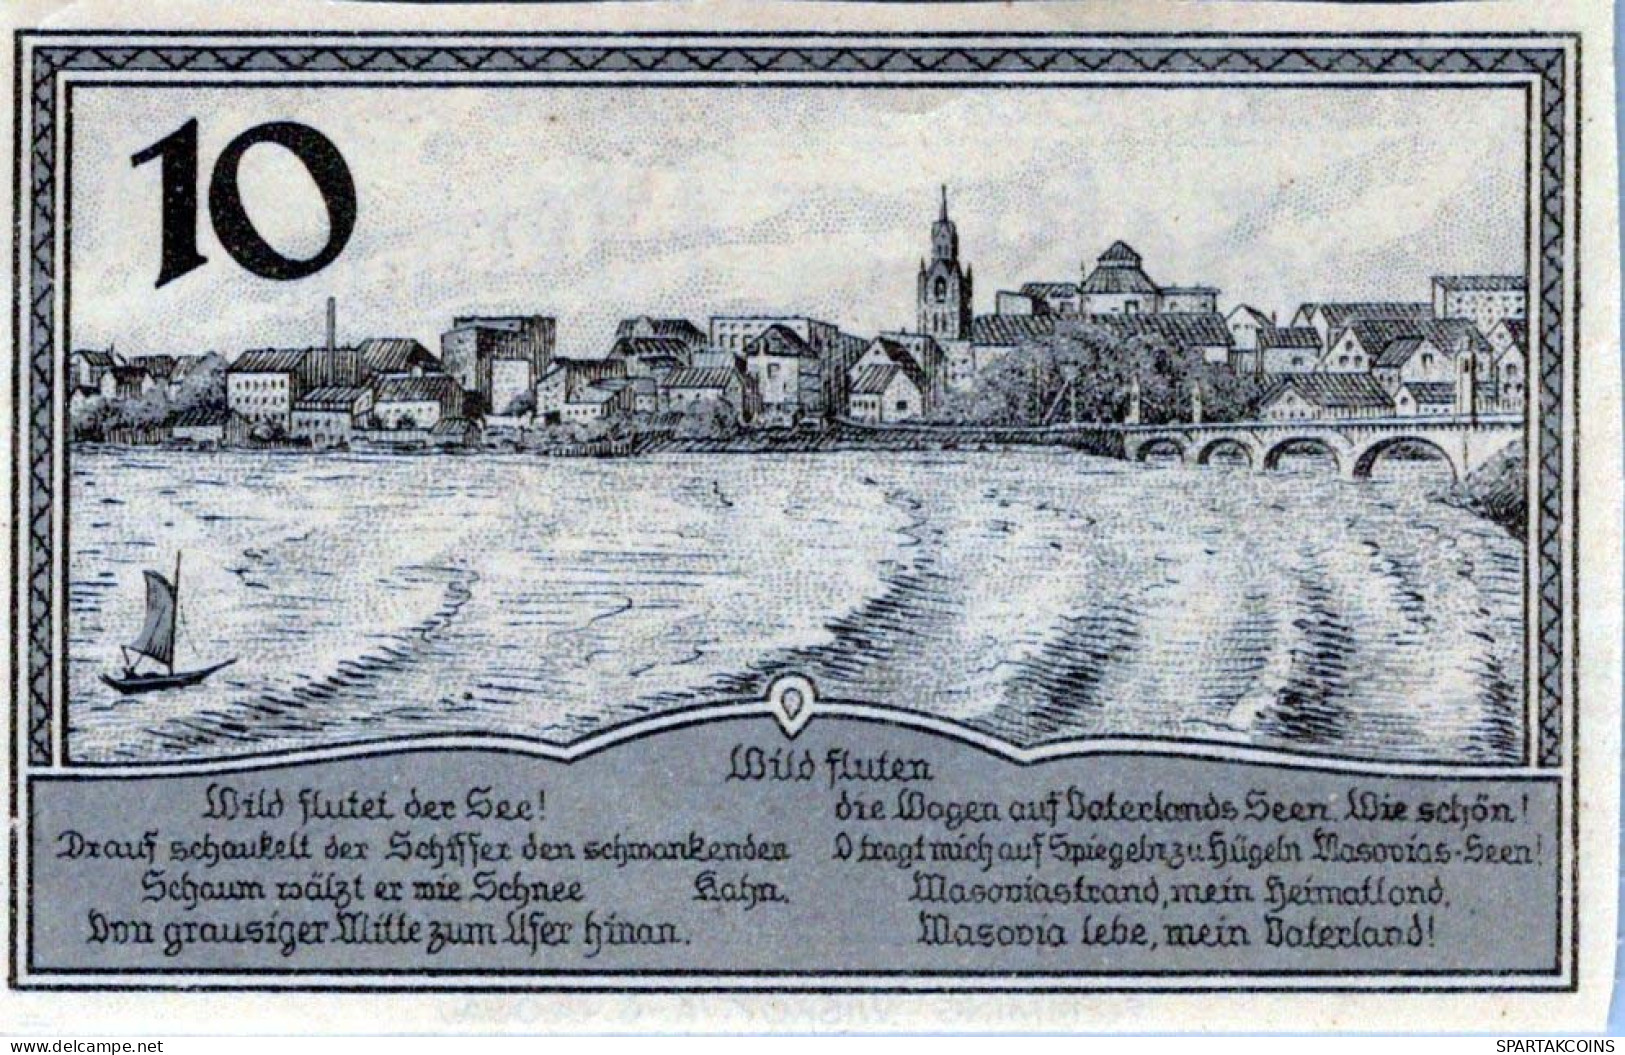 10 PFENNIG 1920 Stadt LYCK East PRUSSLAND UNC DEUTSCHLAND Notgeld Banknote #PC700 - [11] Emissions Locales